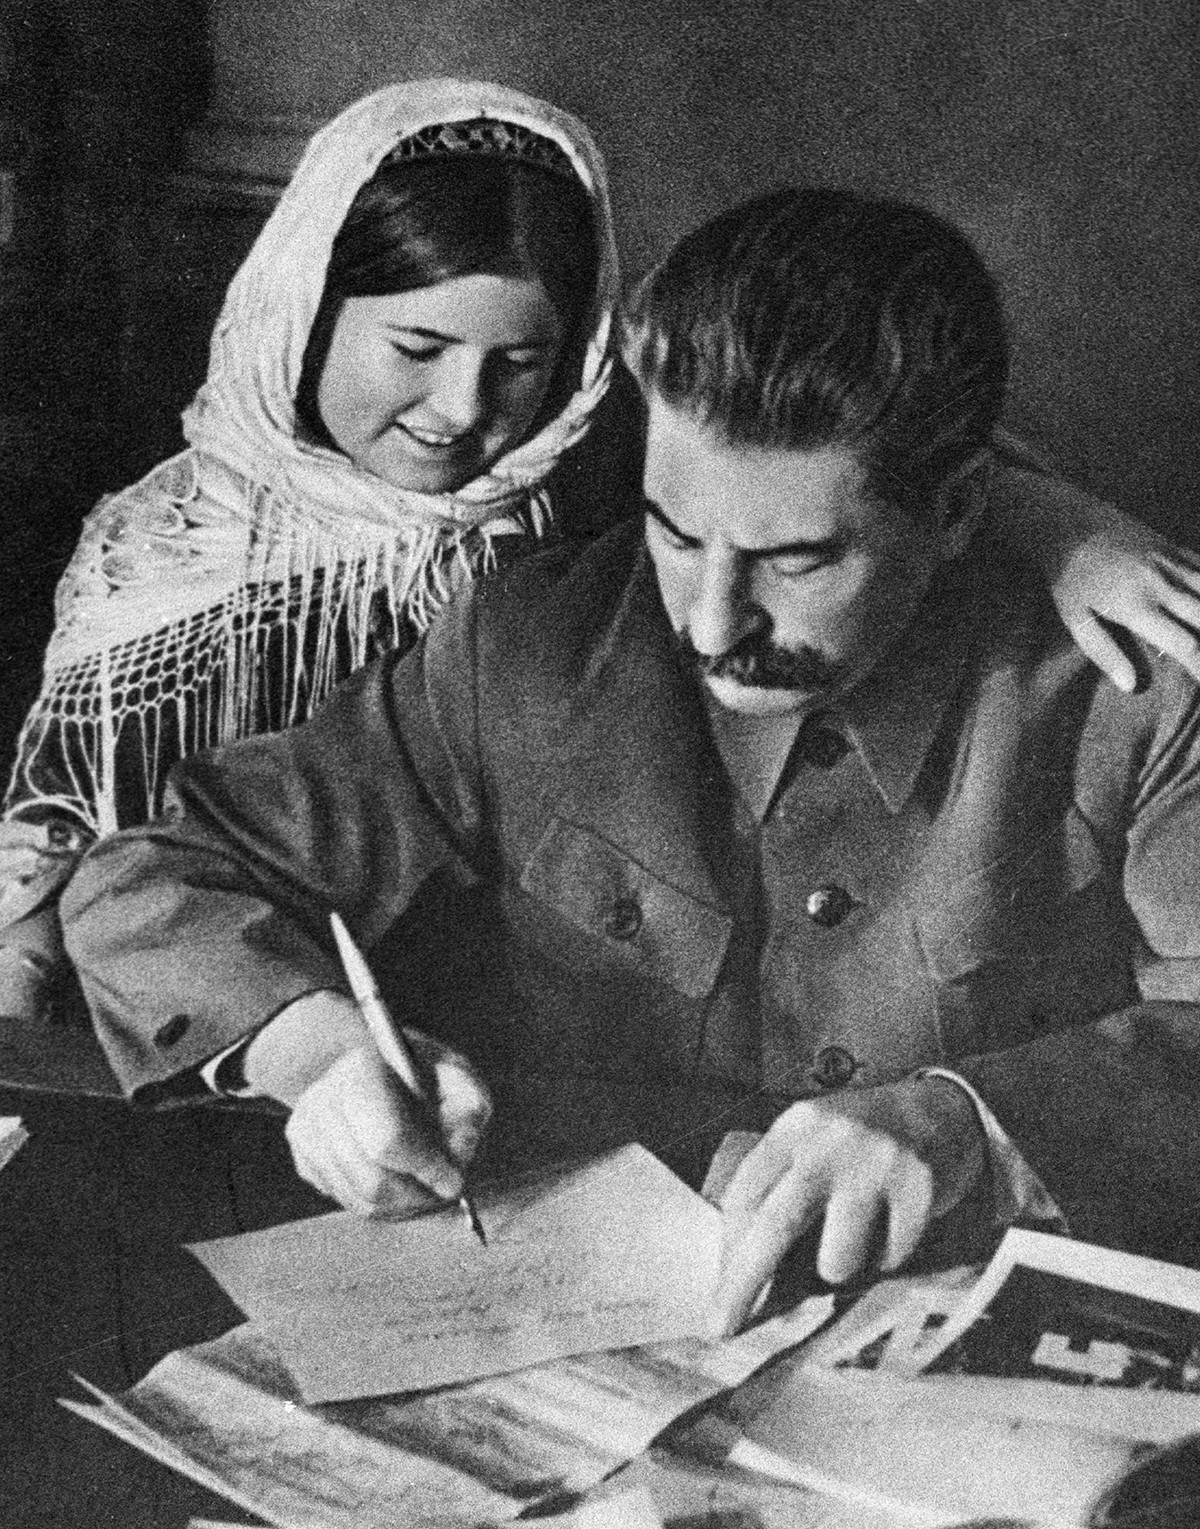 “Iôssif Stálin com garota tadjique”.